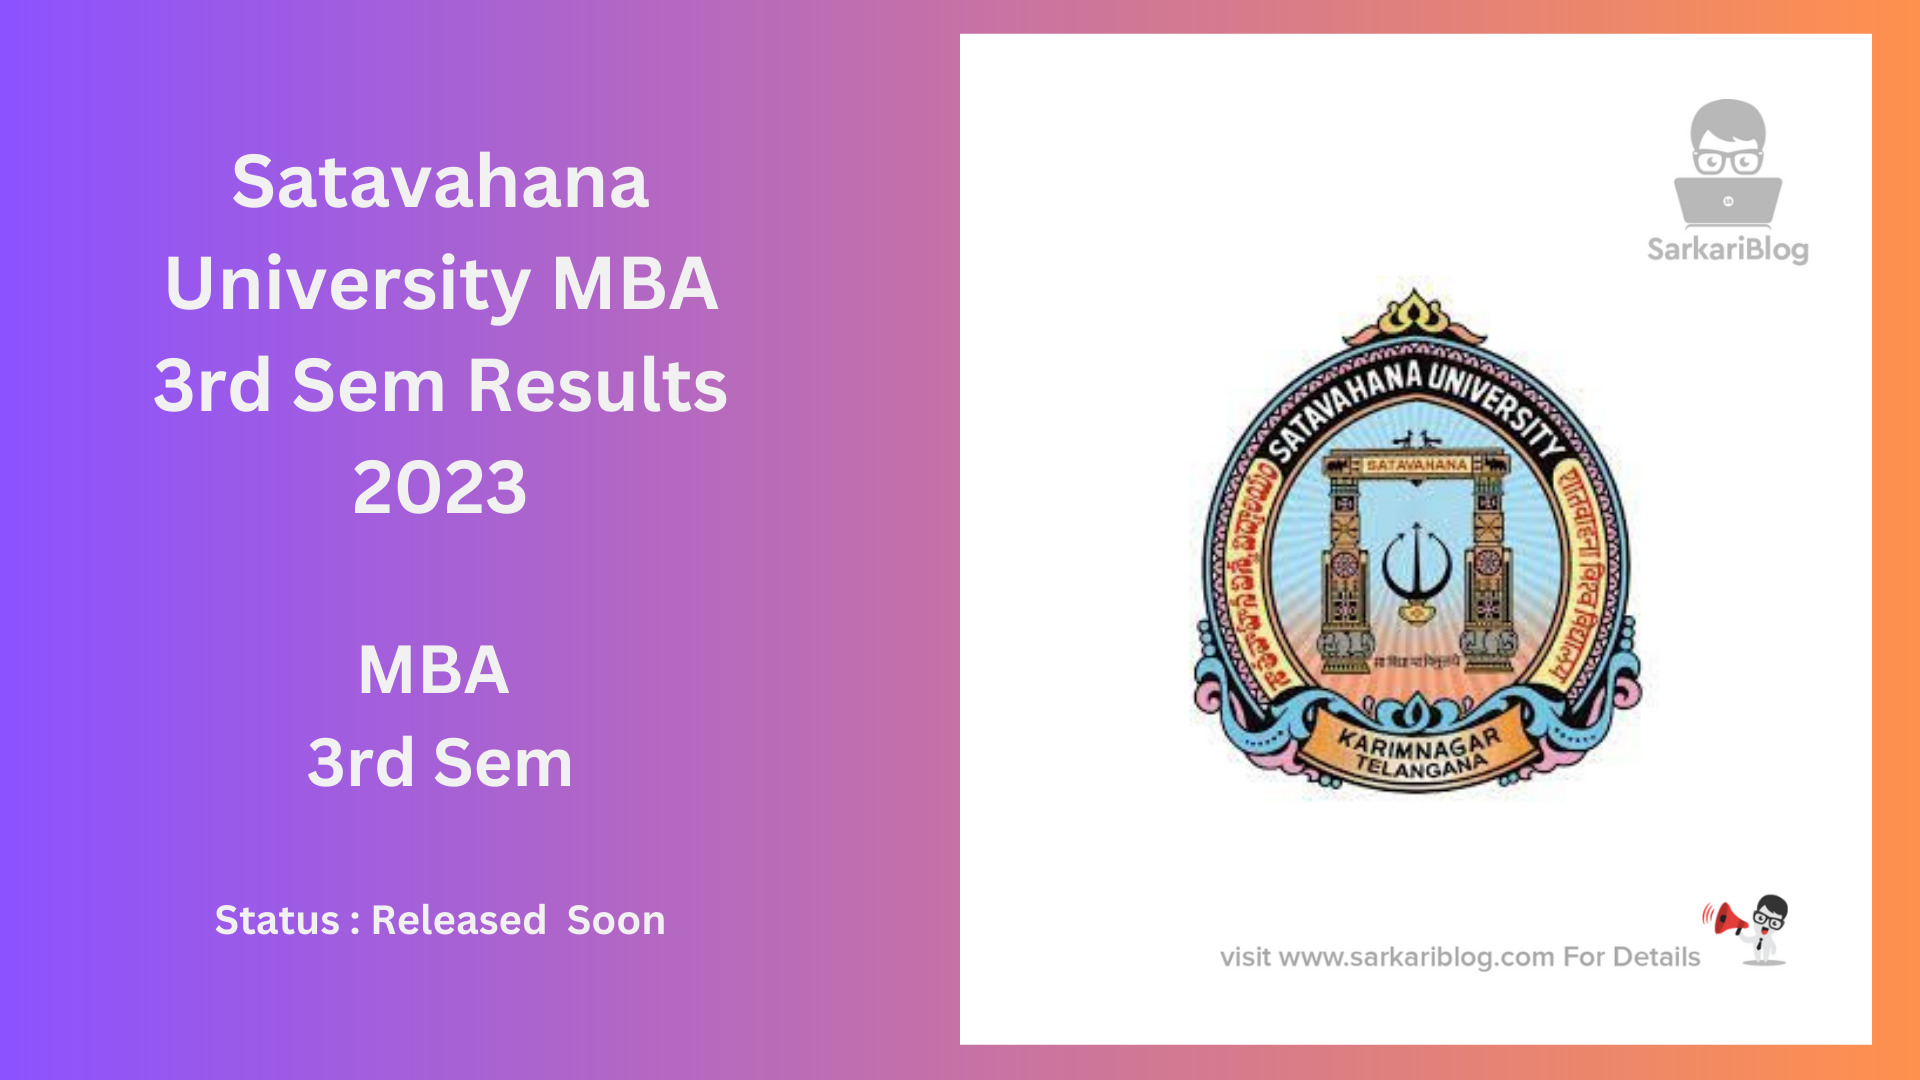 Satavahana University MBA 3rd Sem Results 2023